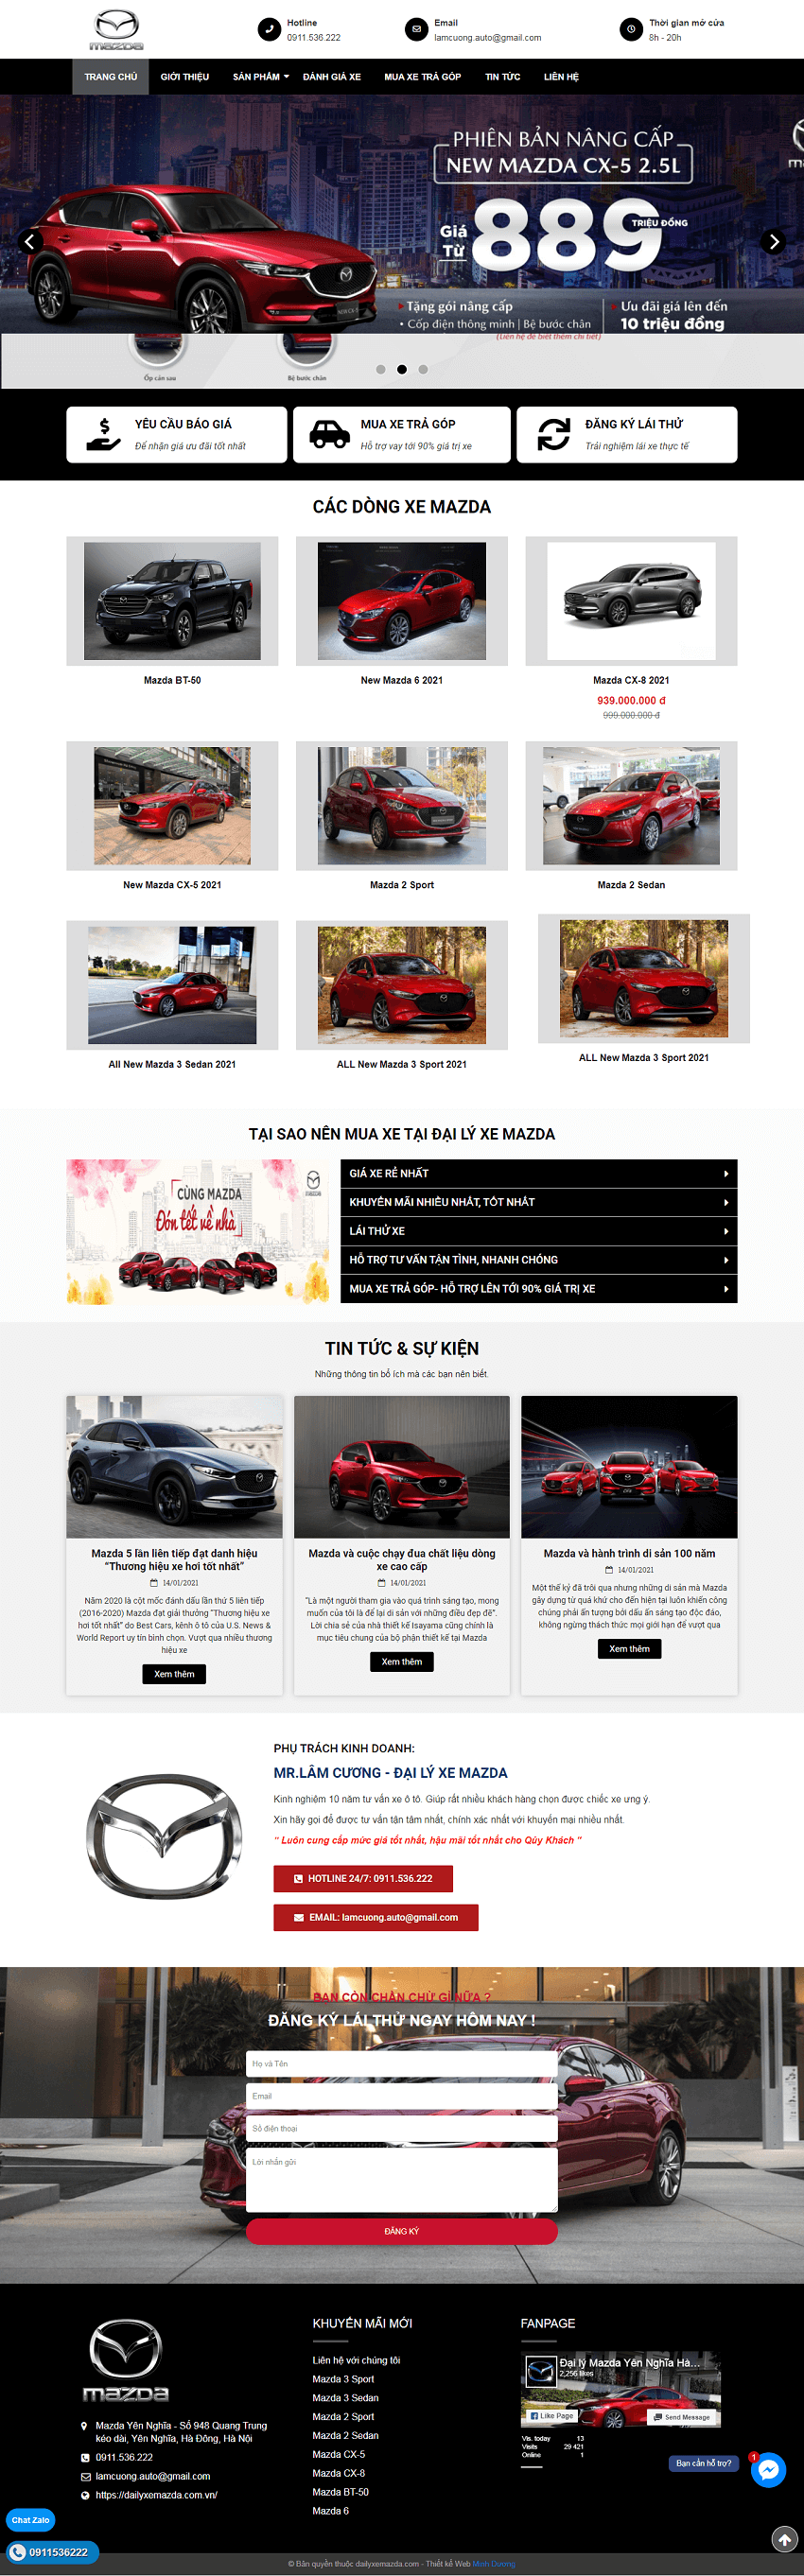 Web ô tô Mazda